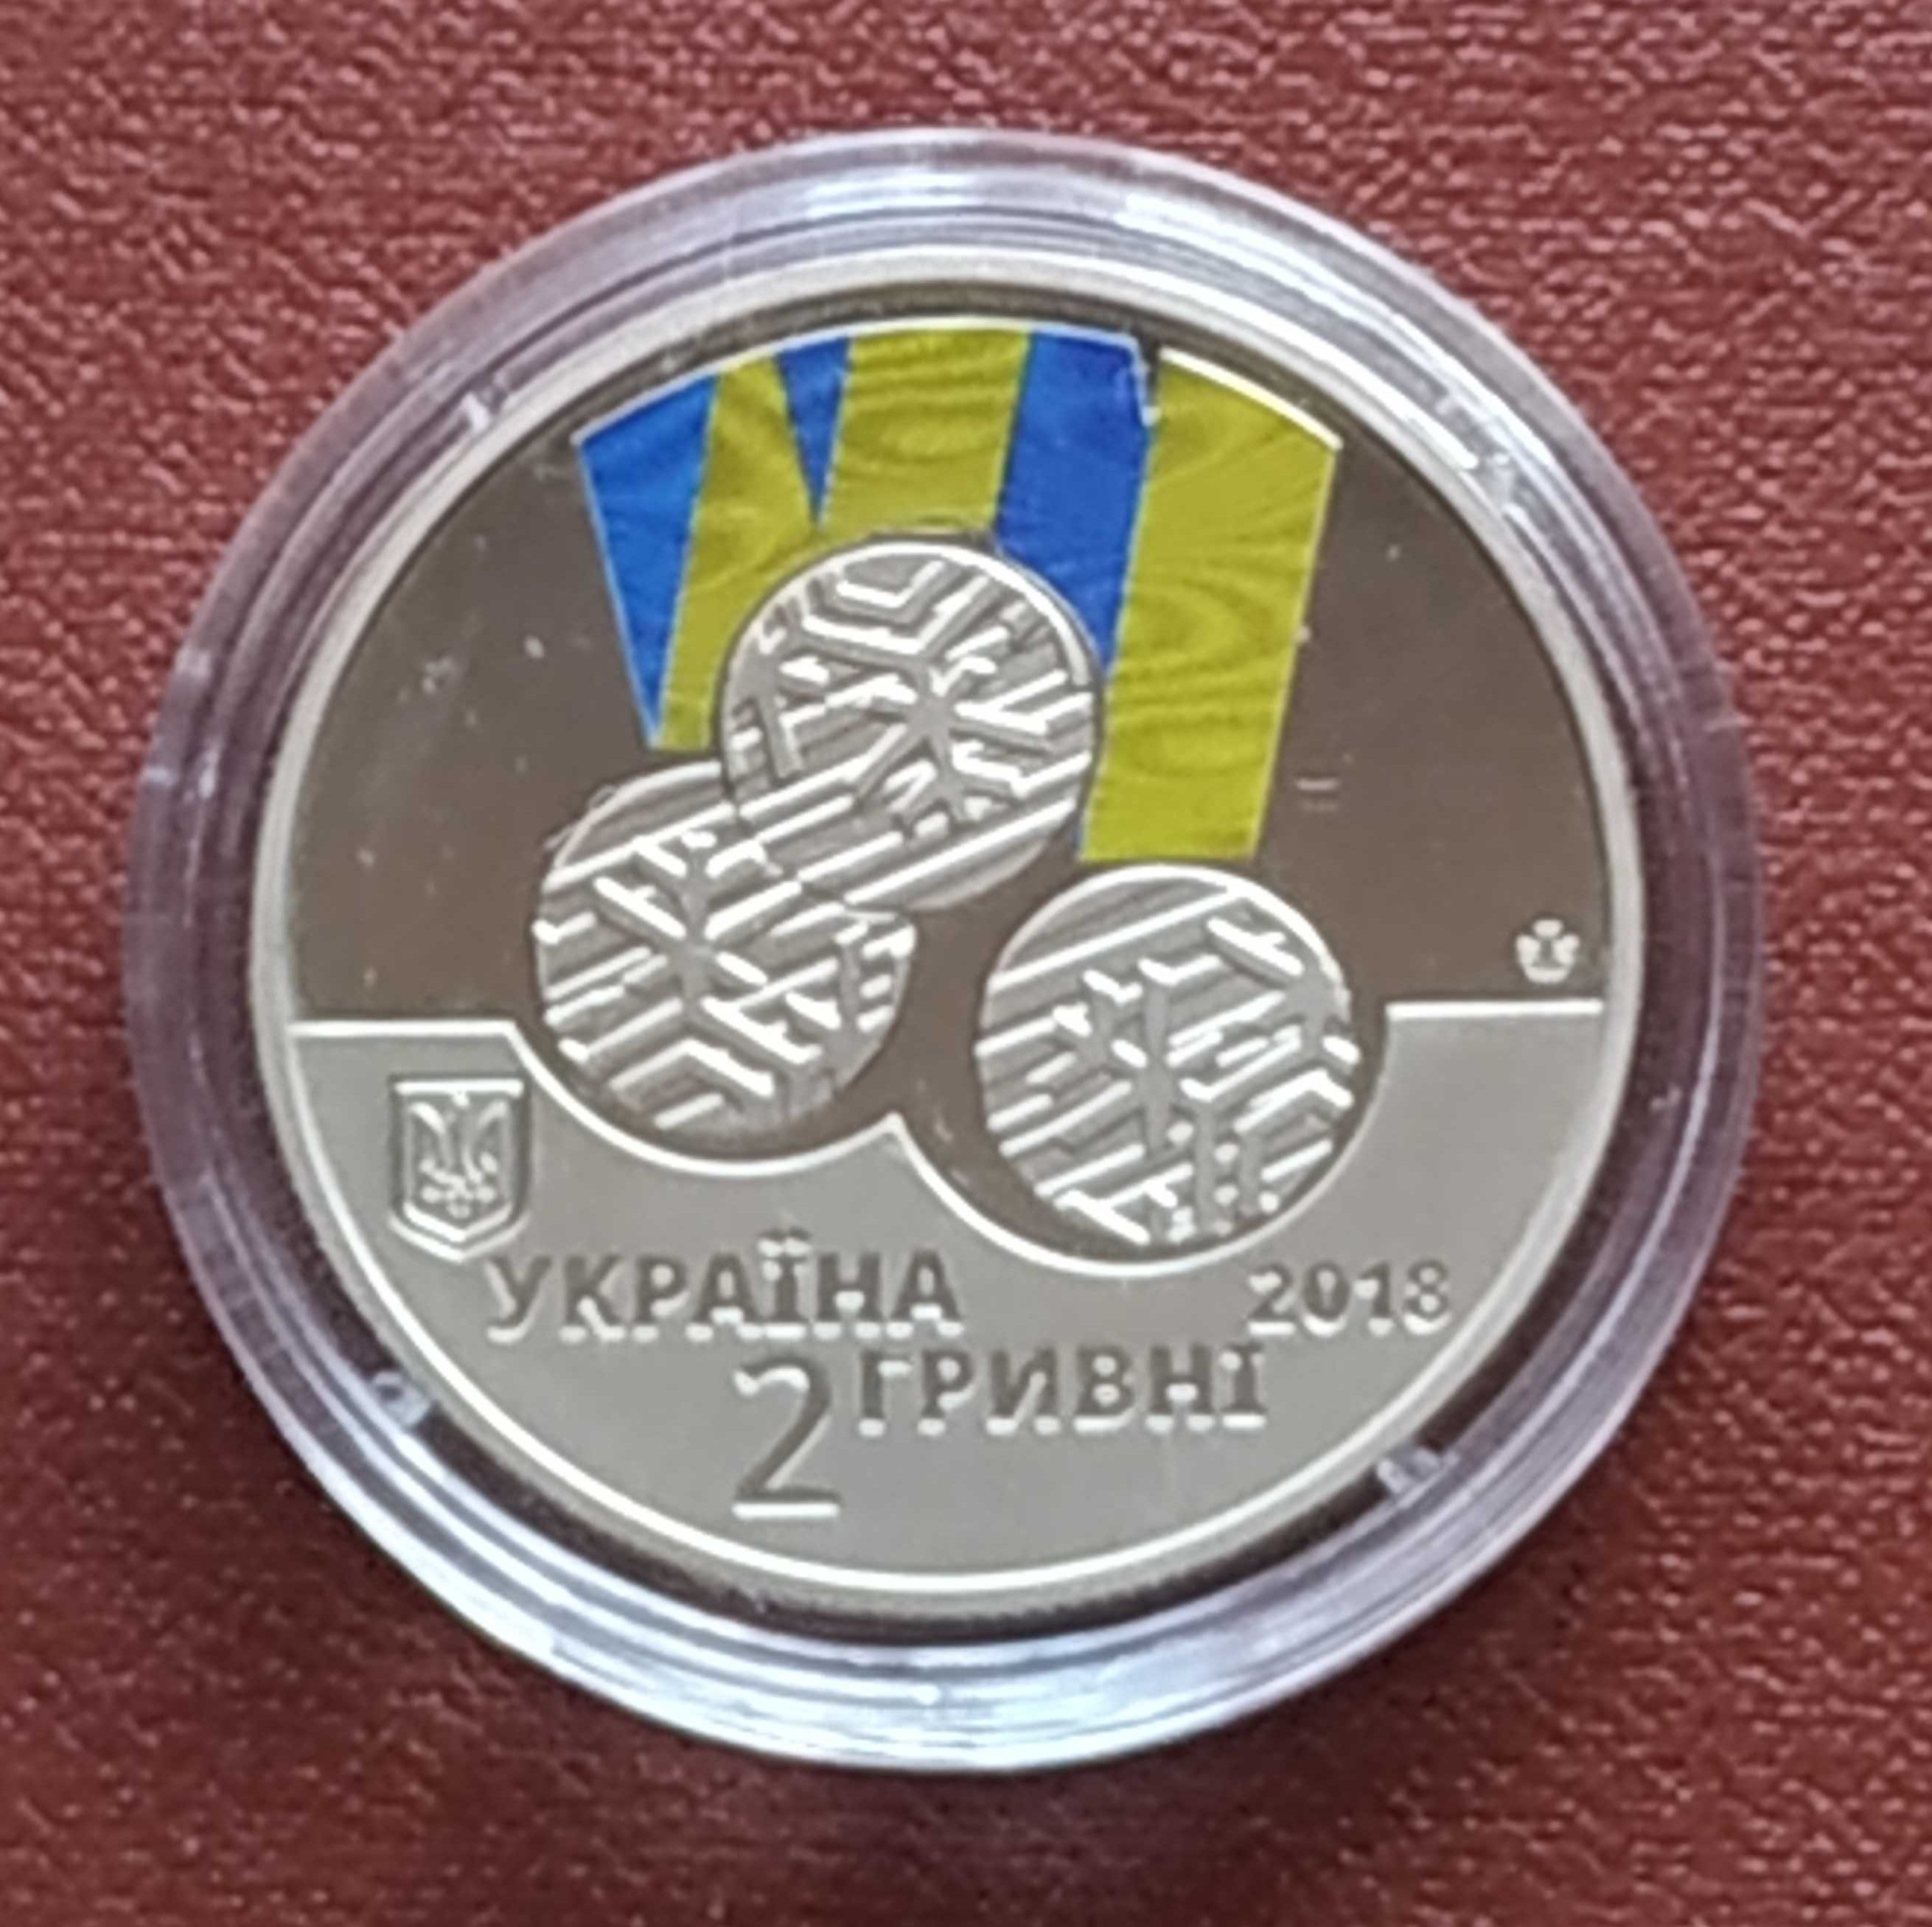 Підбірка монет України 2018 року!!!